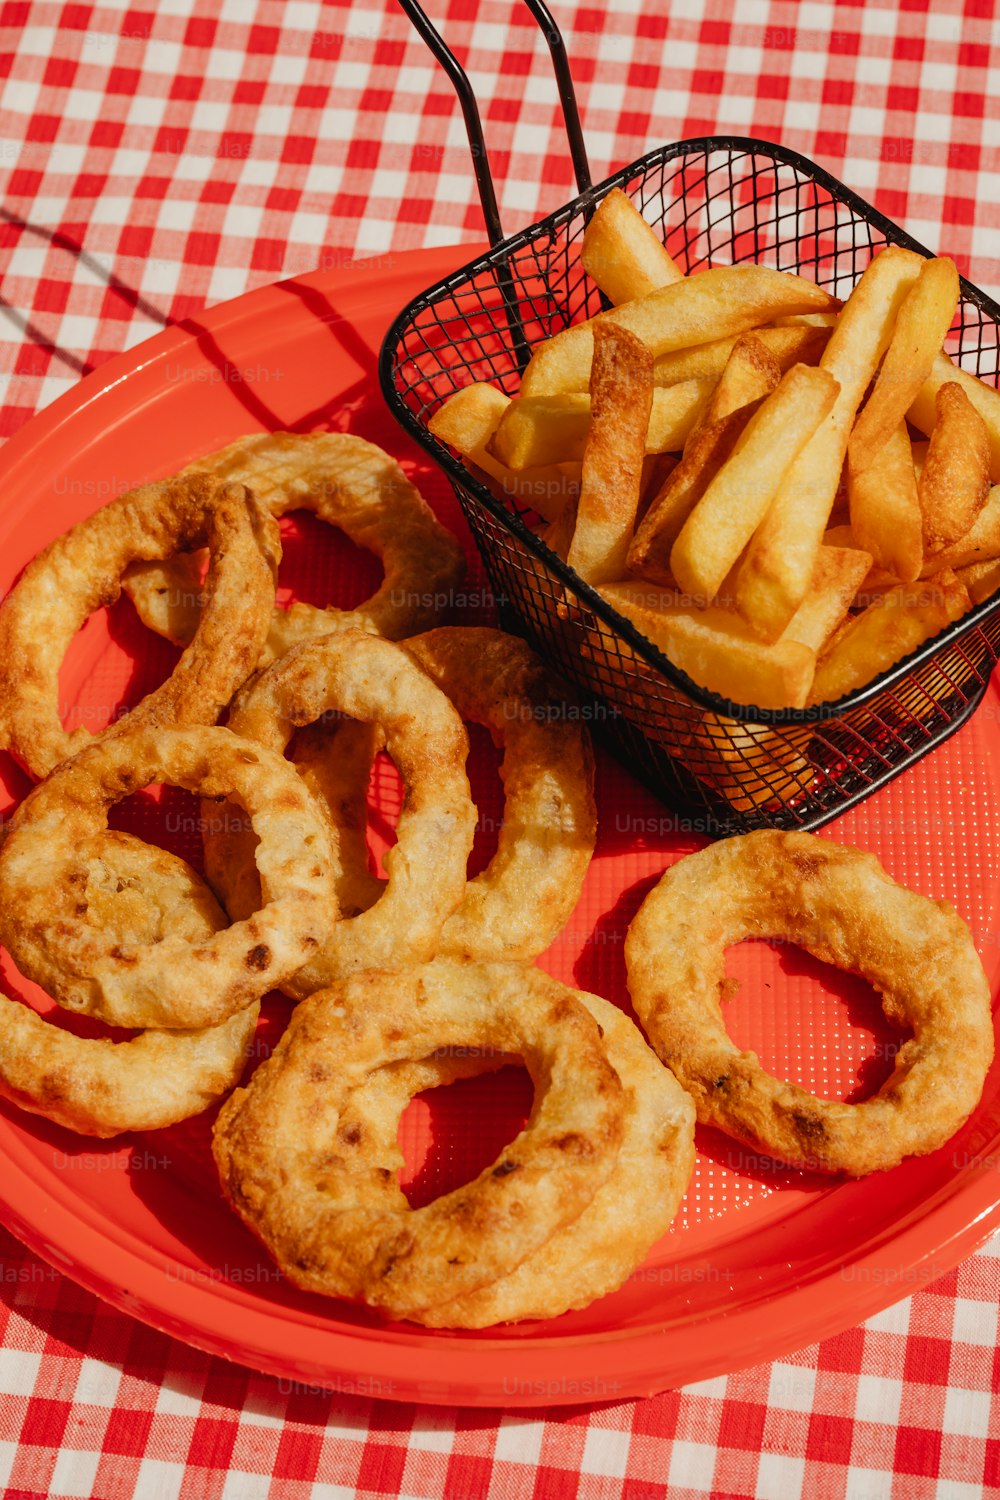 um prato vermelho coberto com anéis de cebola ao lado de uma cesta de batatas fritas